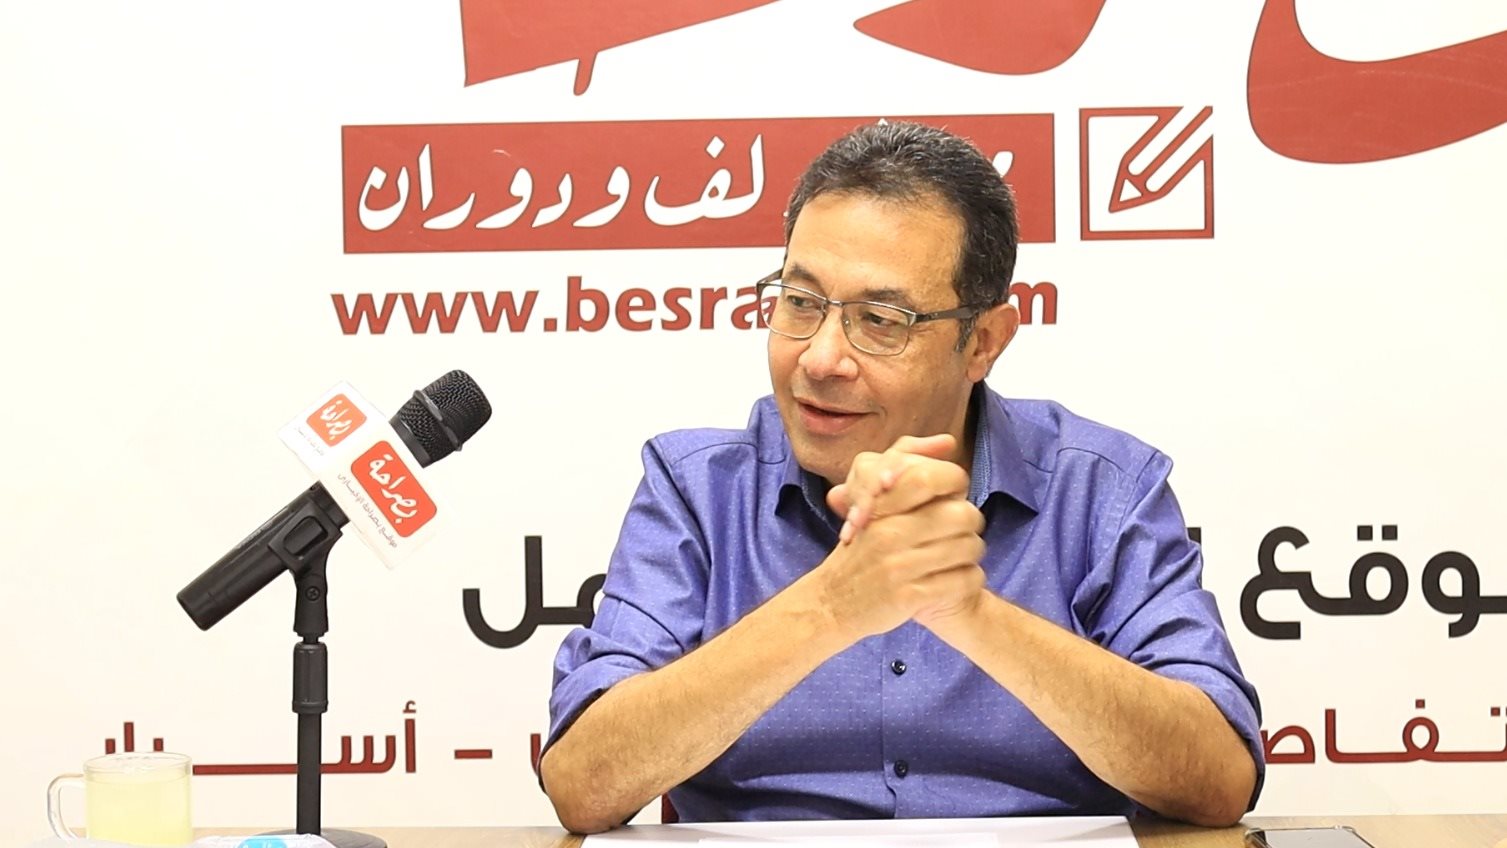  الكاتب الصحفي الكبير محمد هاني